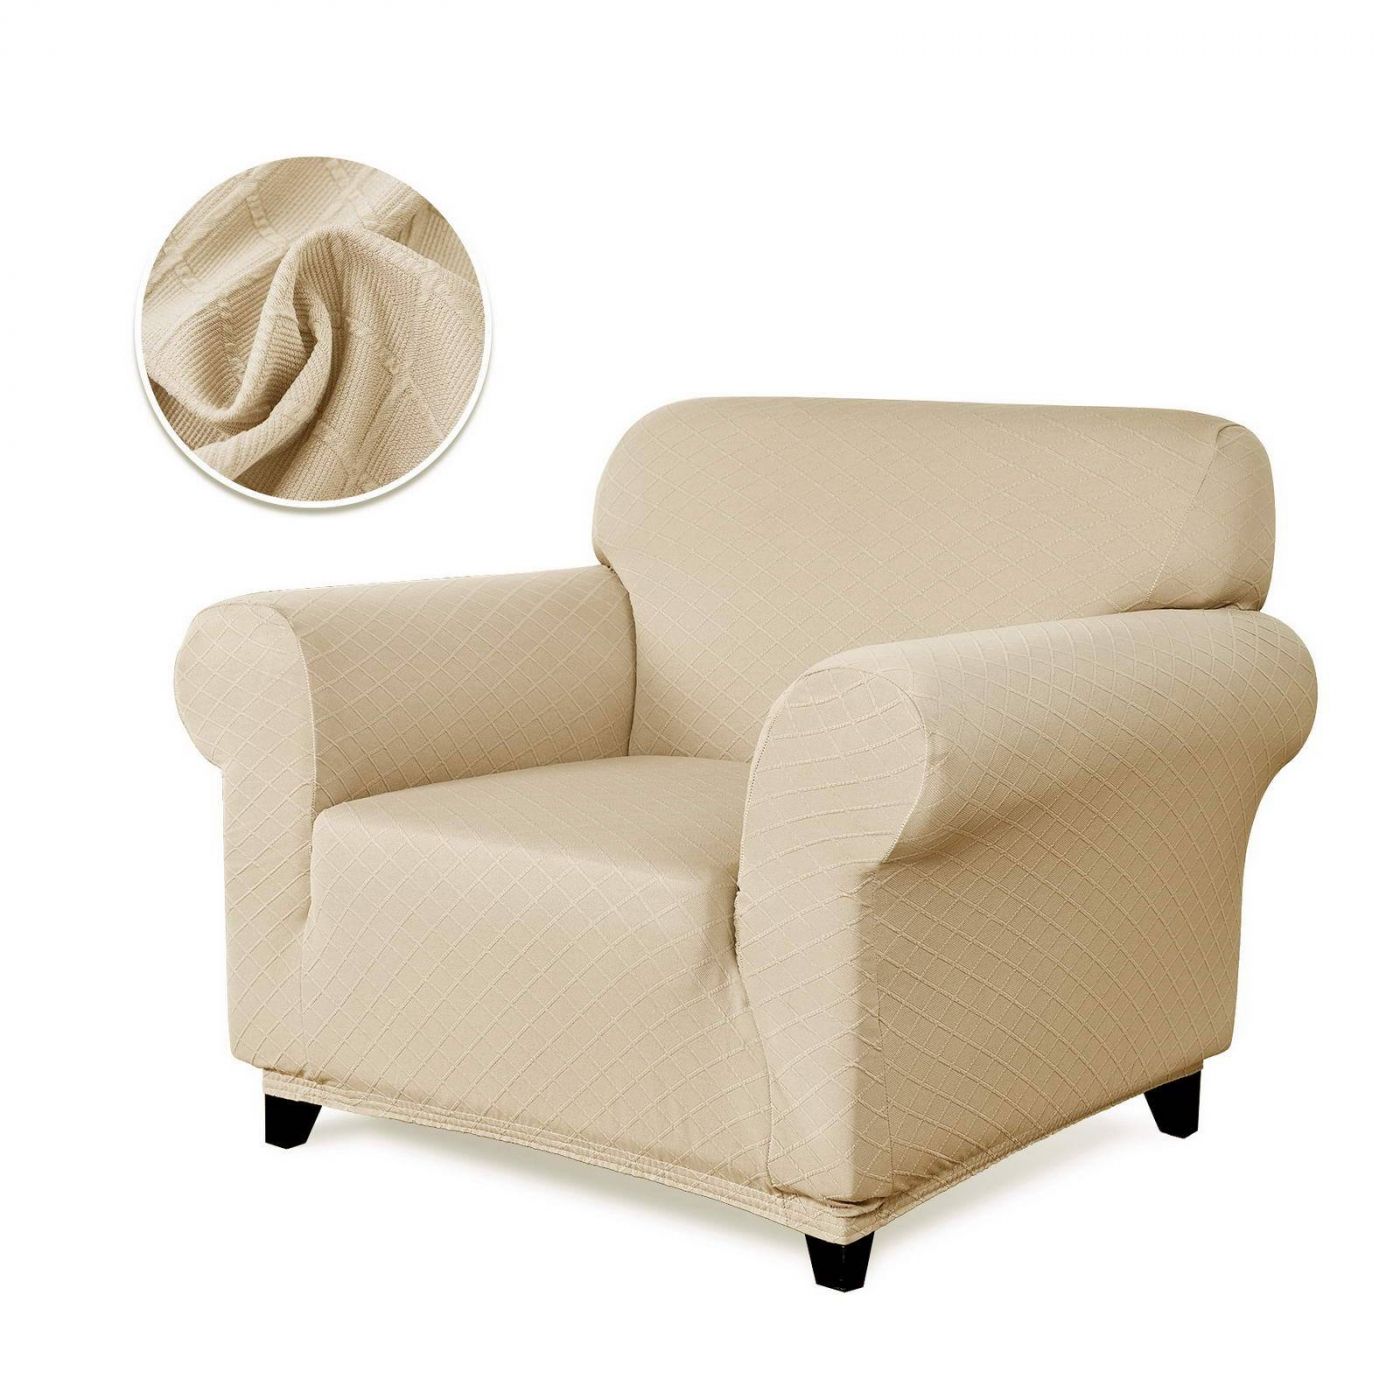 Чехол для кресла Илиана цвет: молочный (Одноместный), размер Без наволочек sofi881471 Чехол для кресла Илиана цвет: молочный (Одноместный) - фото 1